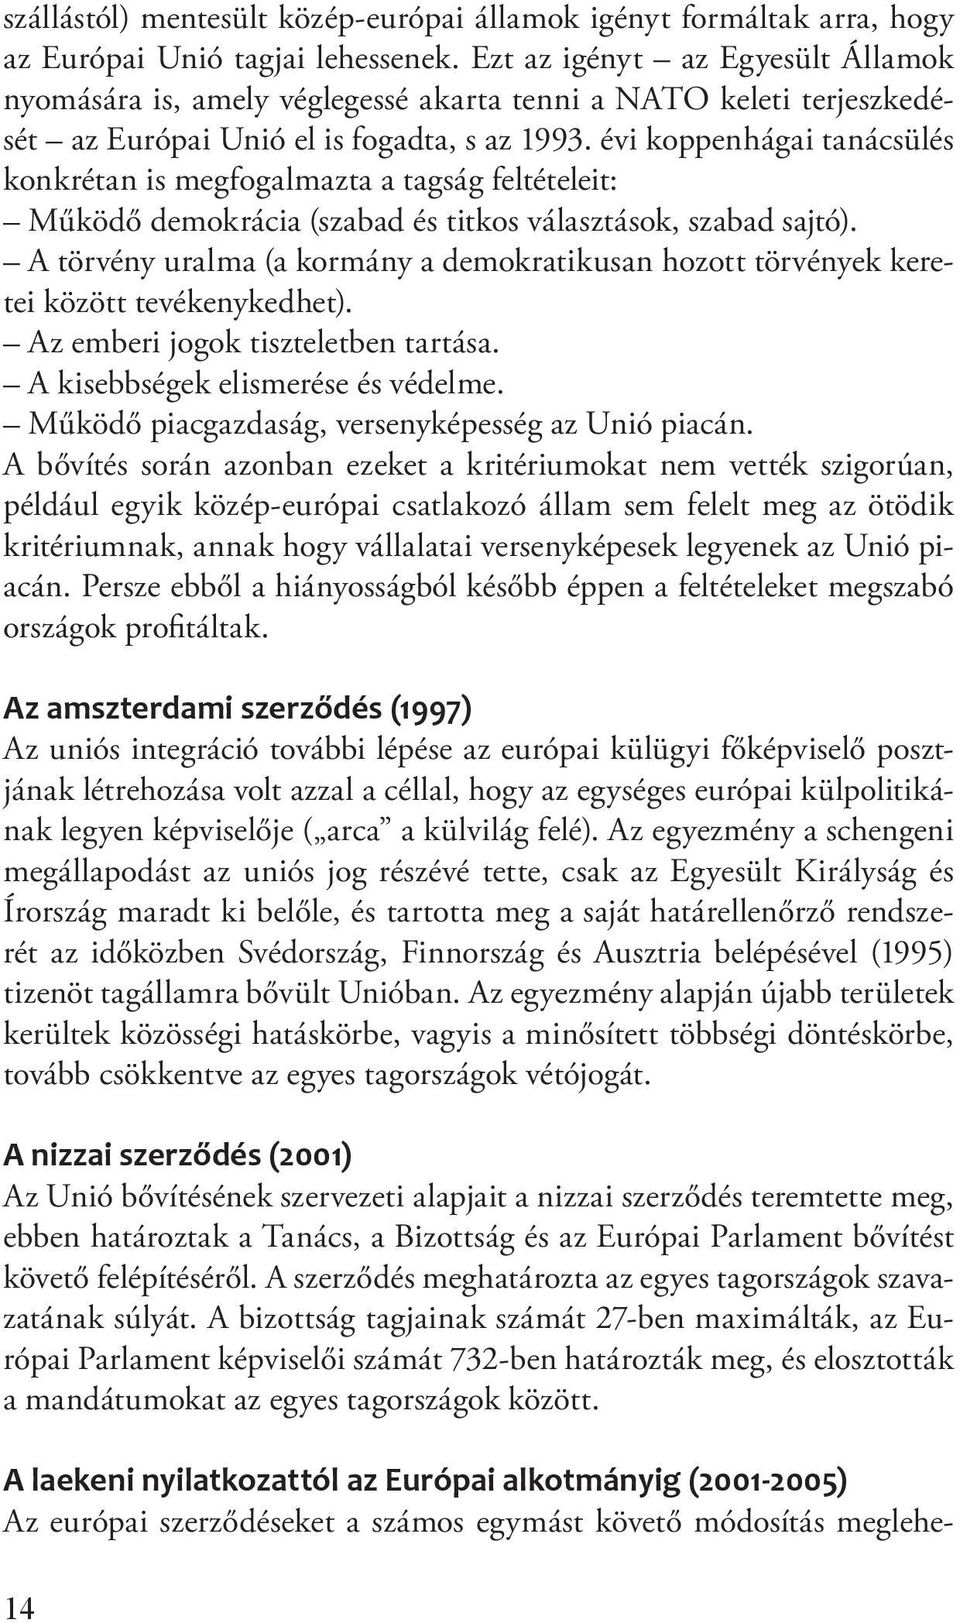 évi koppenhágai tanácsülés konkrétan is megfogalmazta a tagság feltételeit: Működő demokrácia (szabad és titkos választások, szabad sajtó).